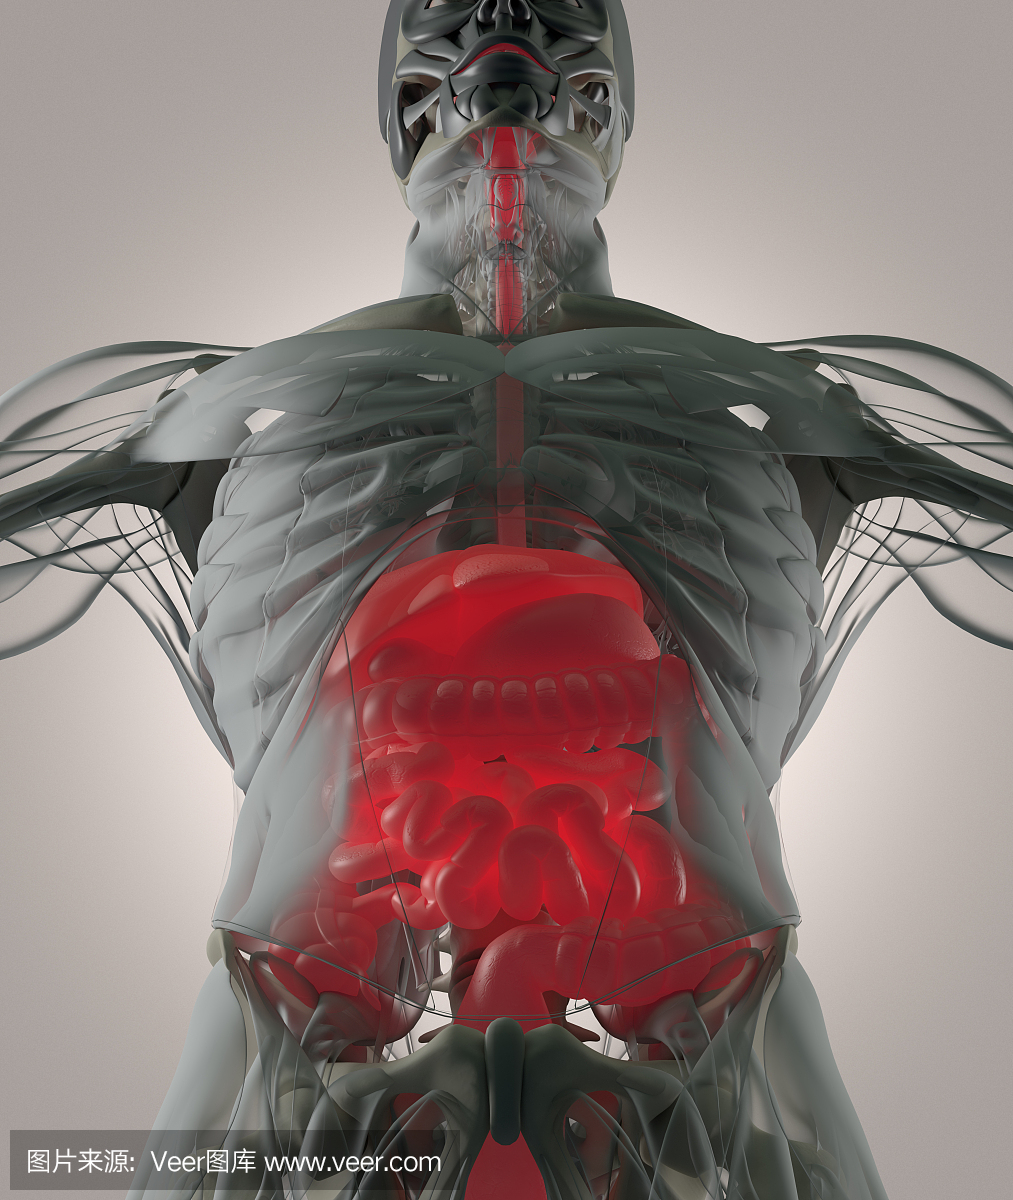 消化系统,人体解剖学,xray像未来派扫描。 3d图